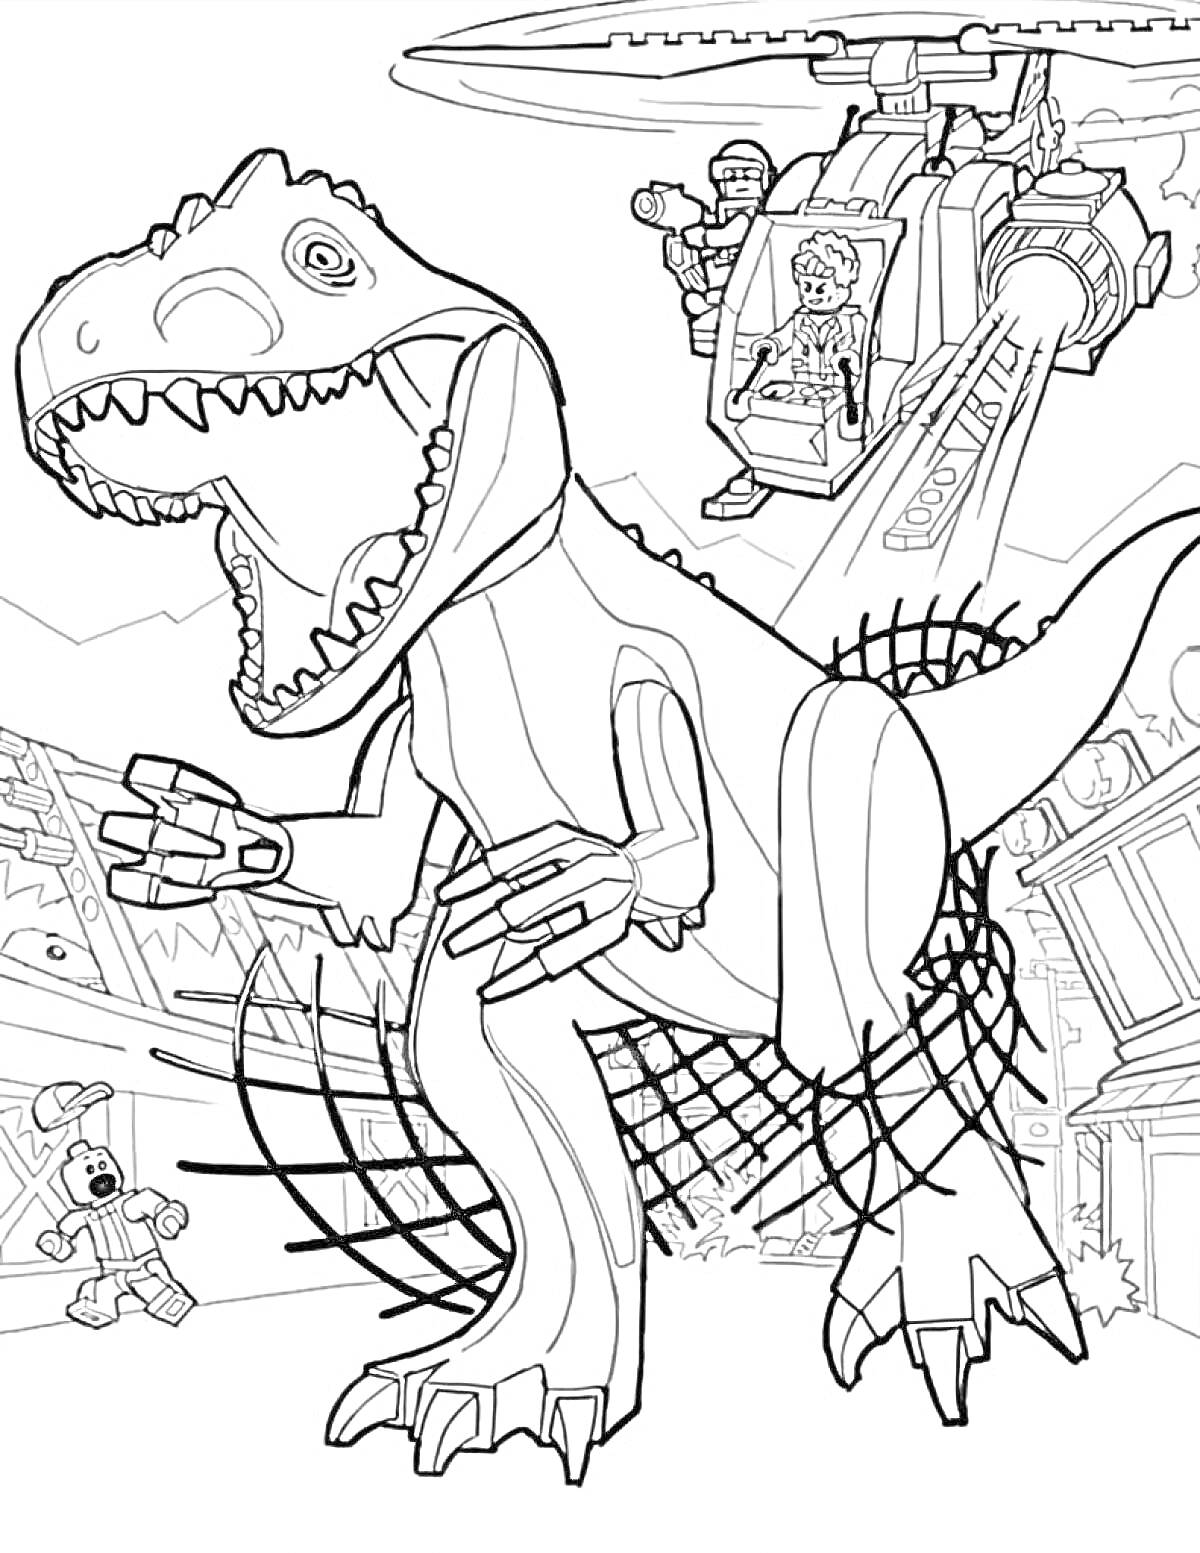 Динозавр Тираннозавр Рекс, вертолет с фигурками людей, сети, рельсы, разрушающиеся здания.